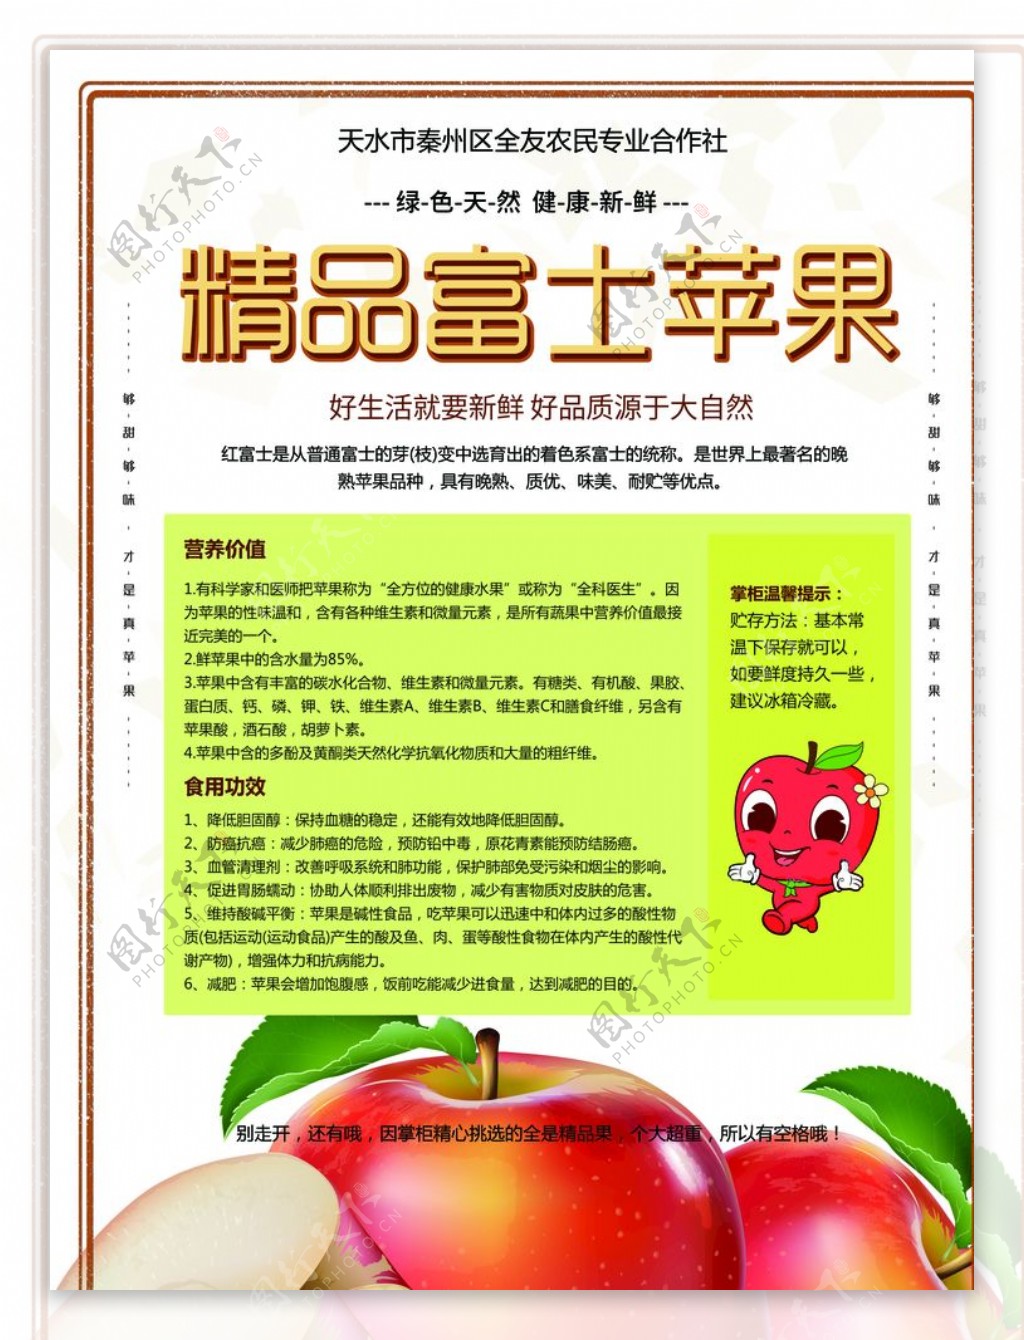 富士苹果简介海报